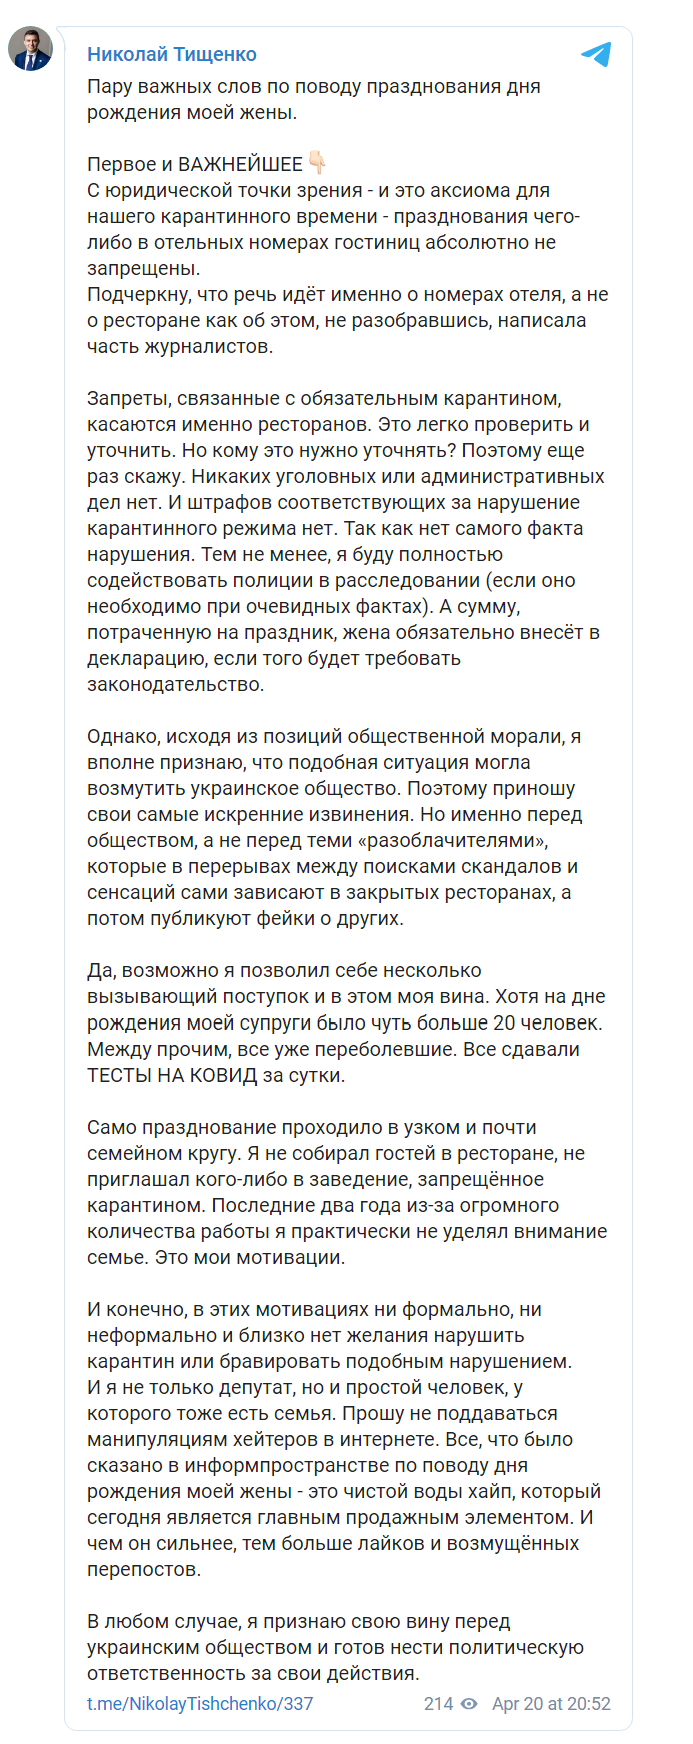 Скриншот из Телеграм Николая Тищенко